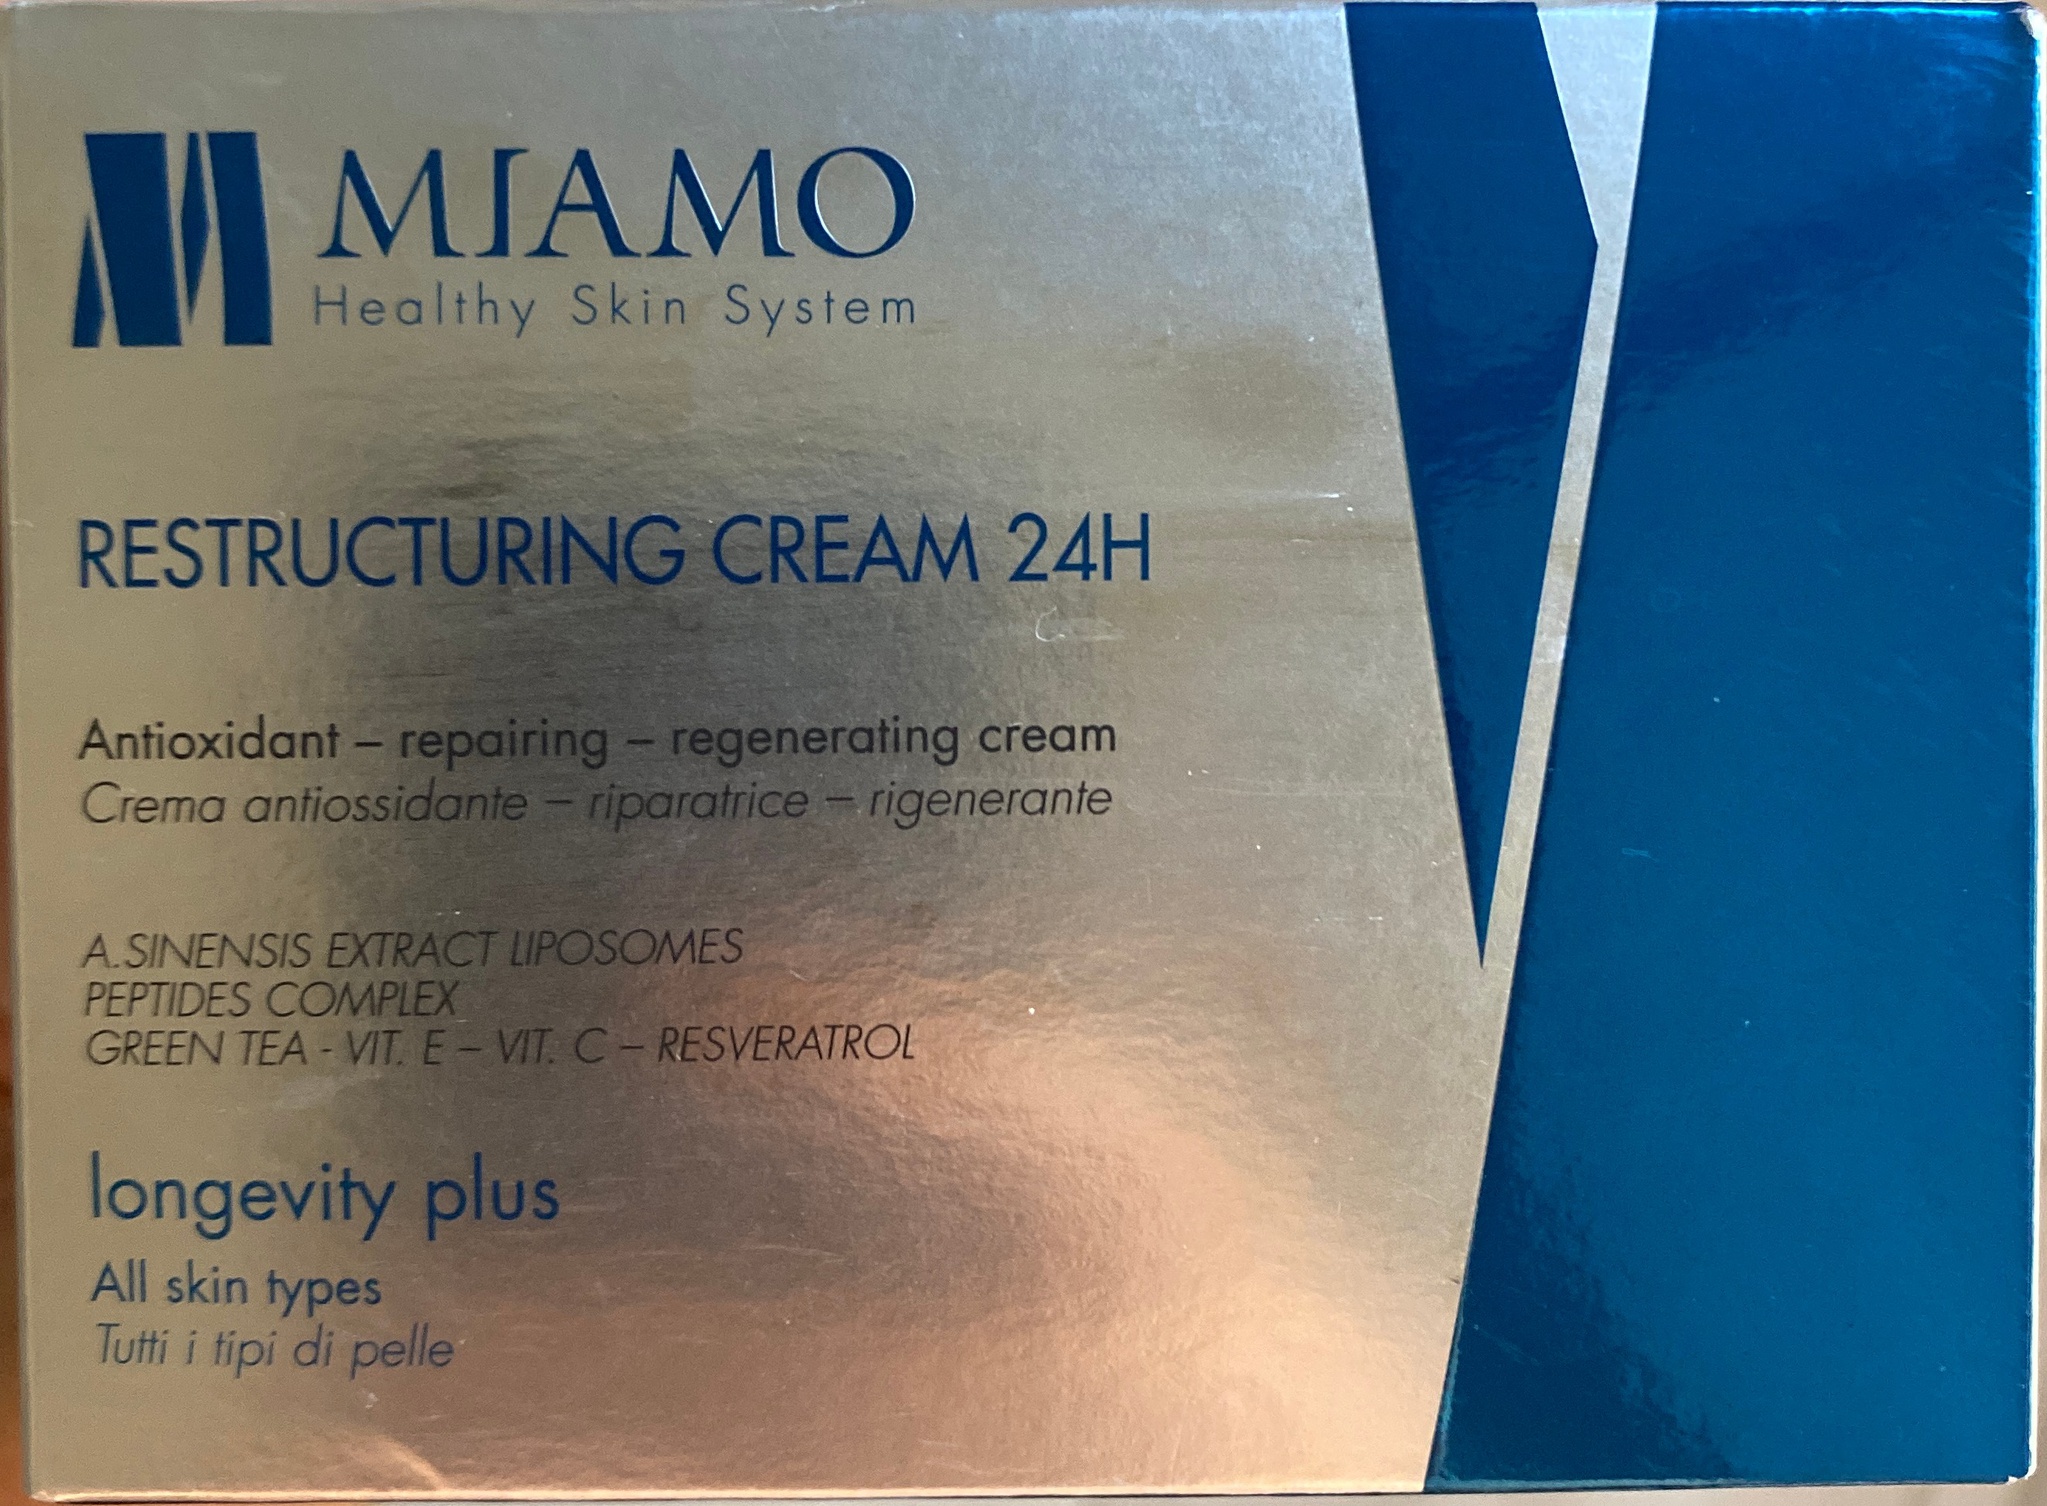 Miamo Restructuring Cream 24h